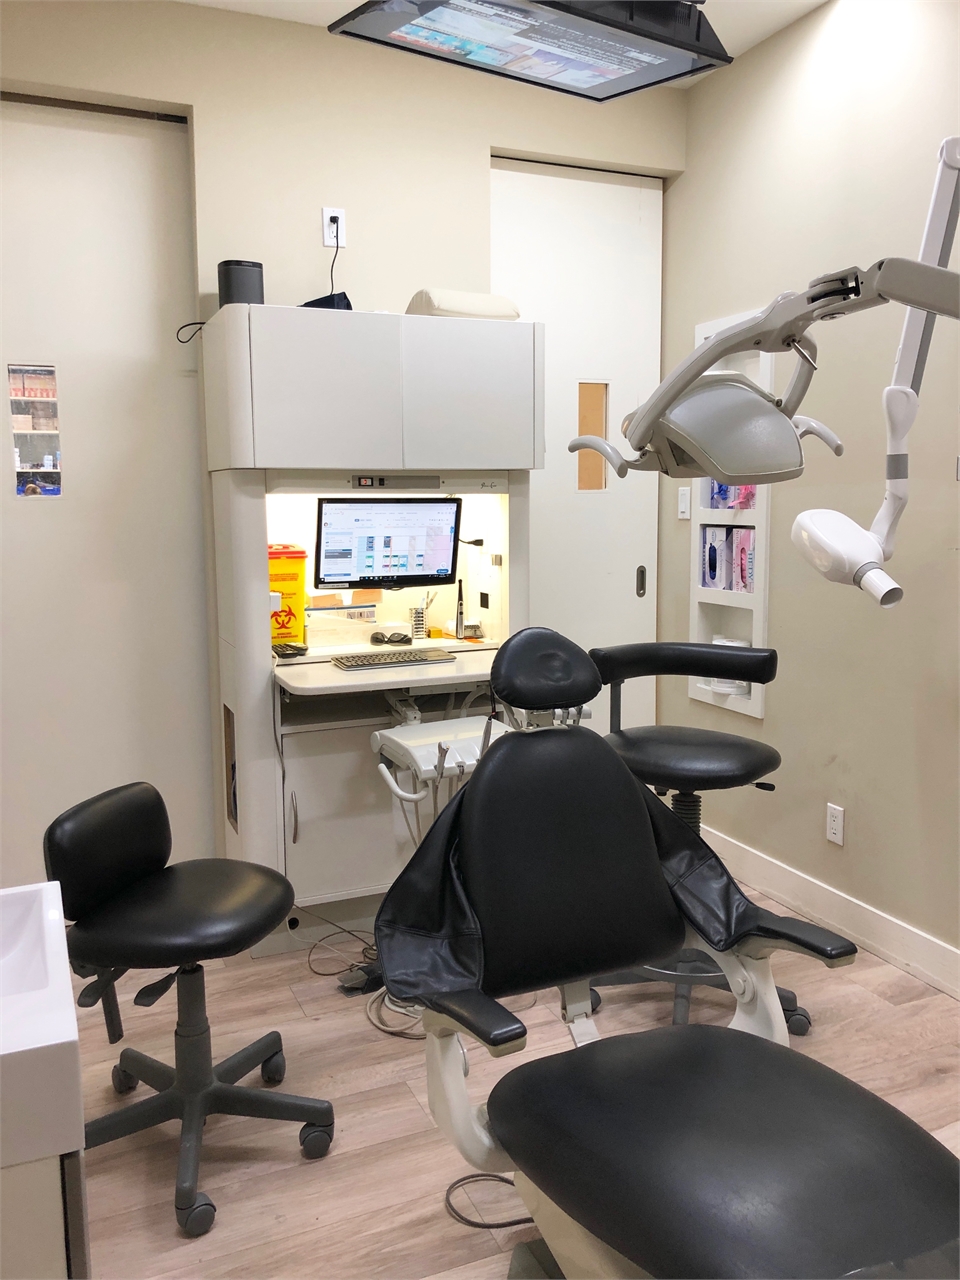 Operatory at Toronto dentist North Shores Dental